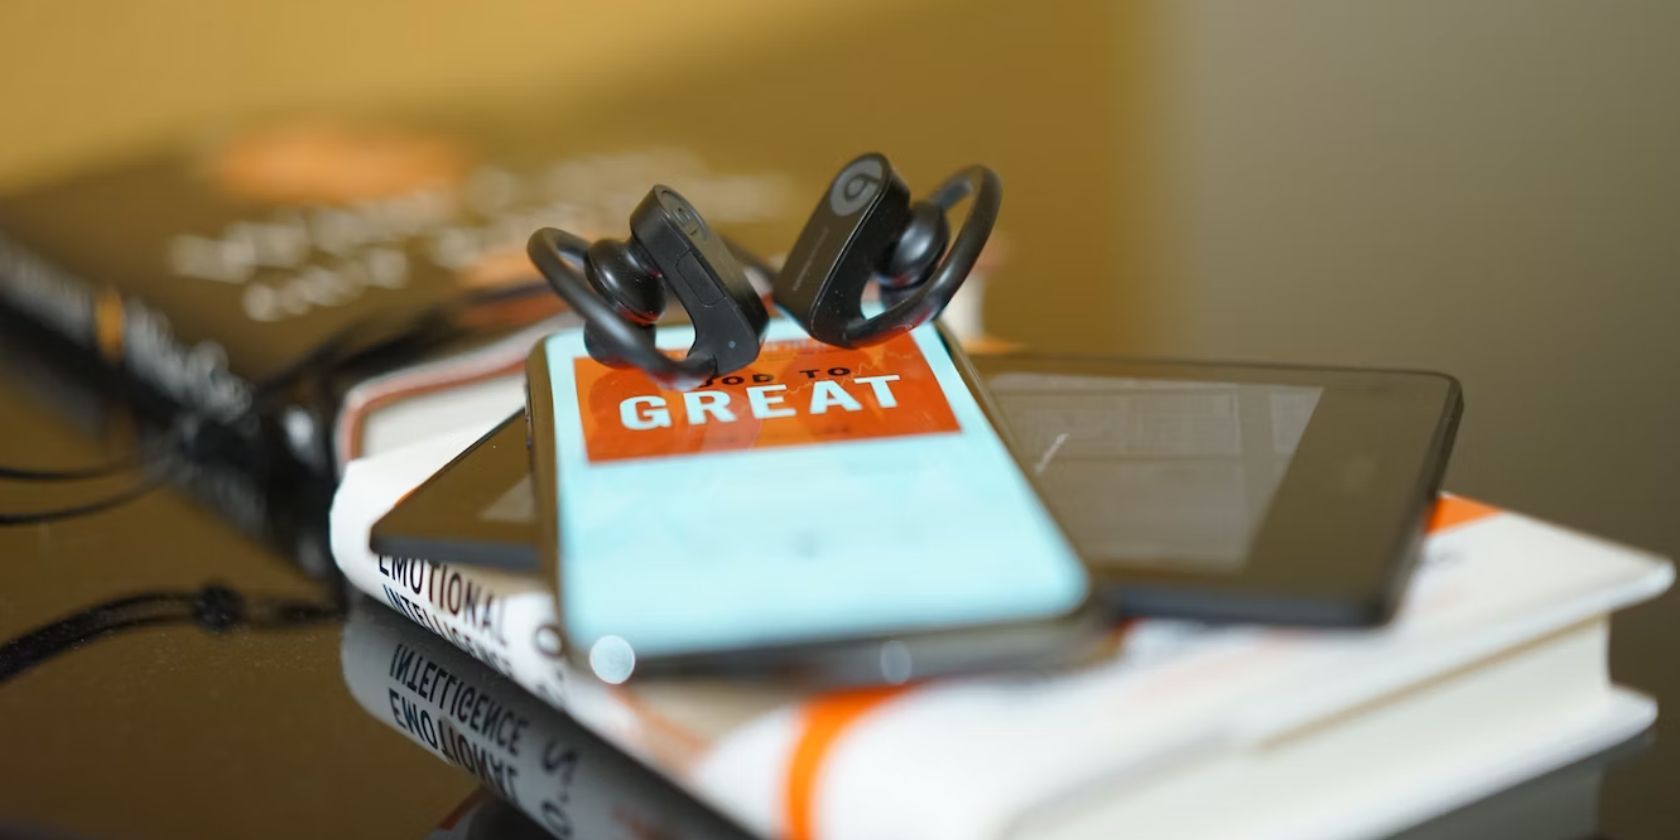 dois fones de ouvido pretos apoiados em um telefone que está em um Kindle que está em um livro que está sobre uma mesa